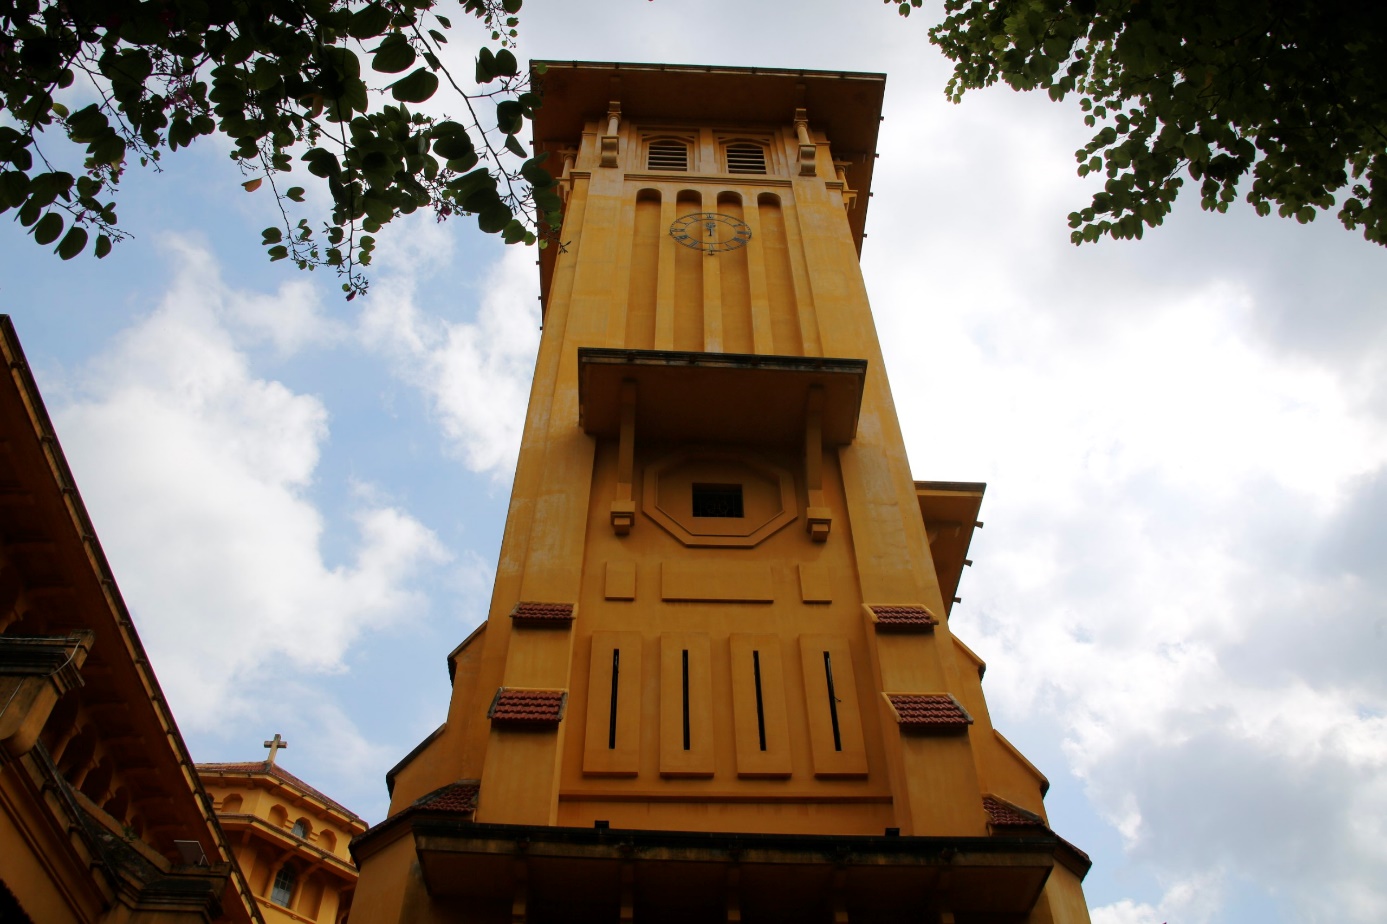 Kiến trúc độc đáo hiếm thấy, nhà thờ cổ nổi tiếng ở Hà Nội hút du khách chụp ảnh - 3